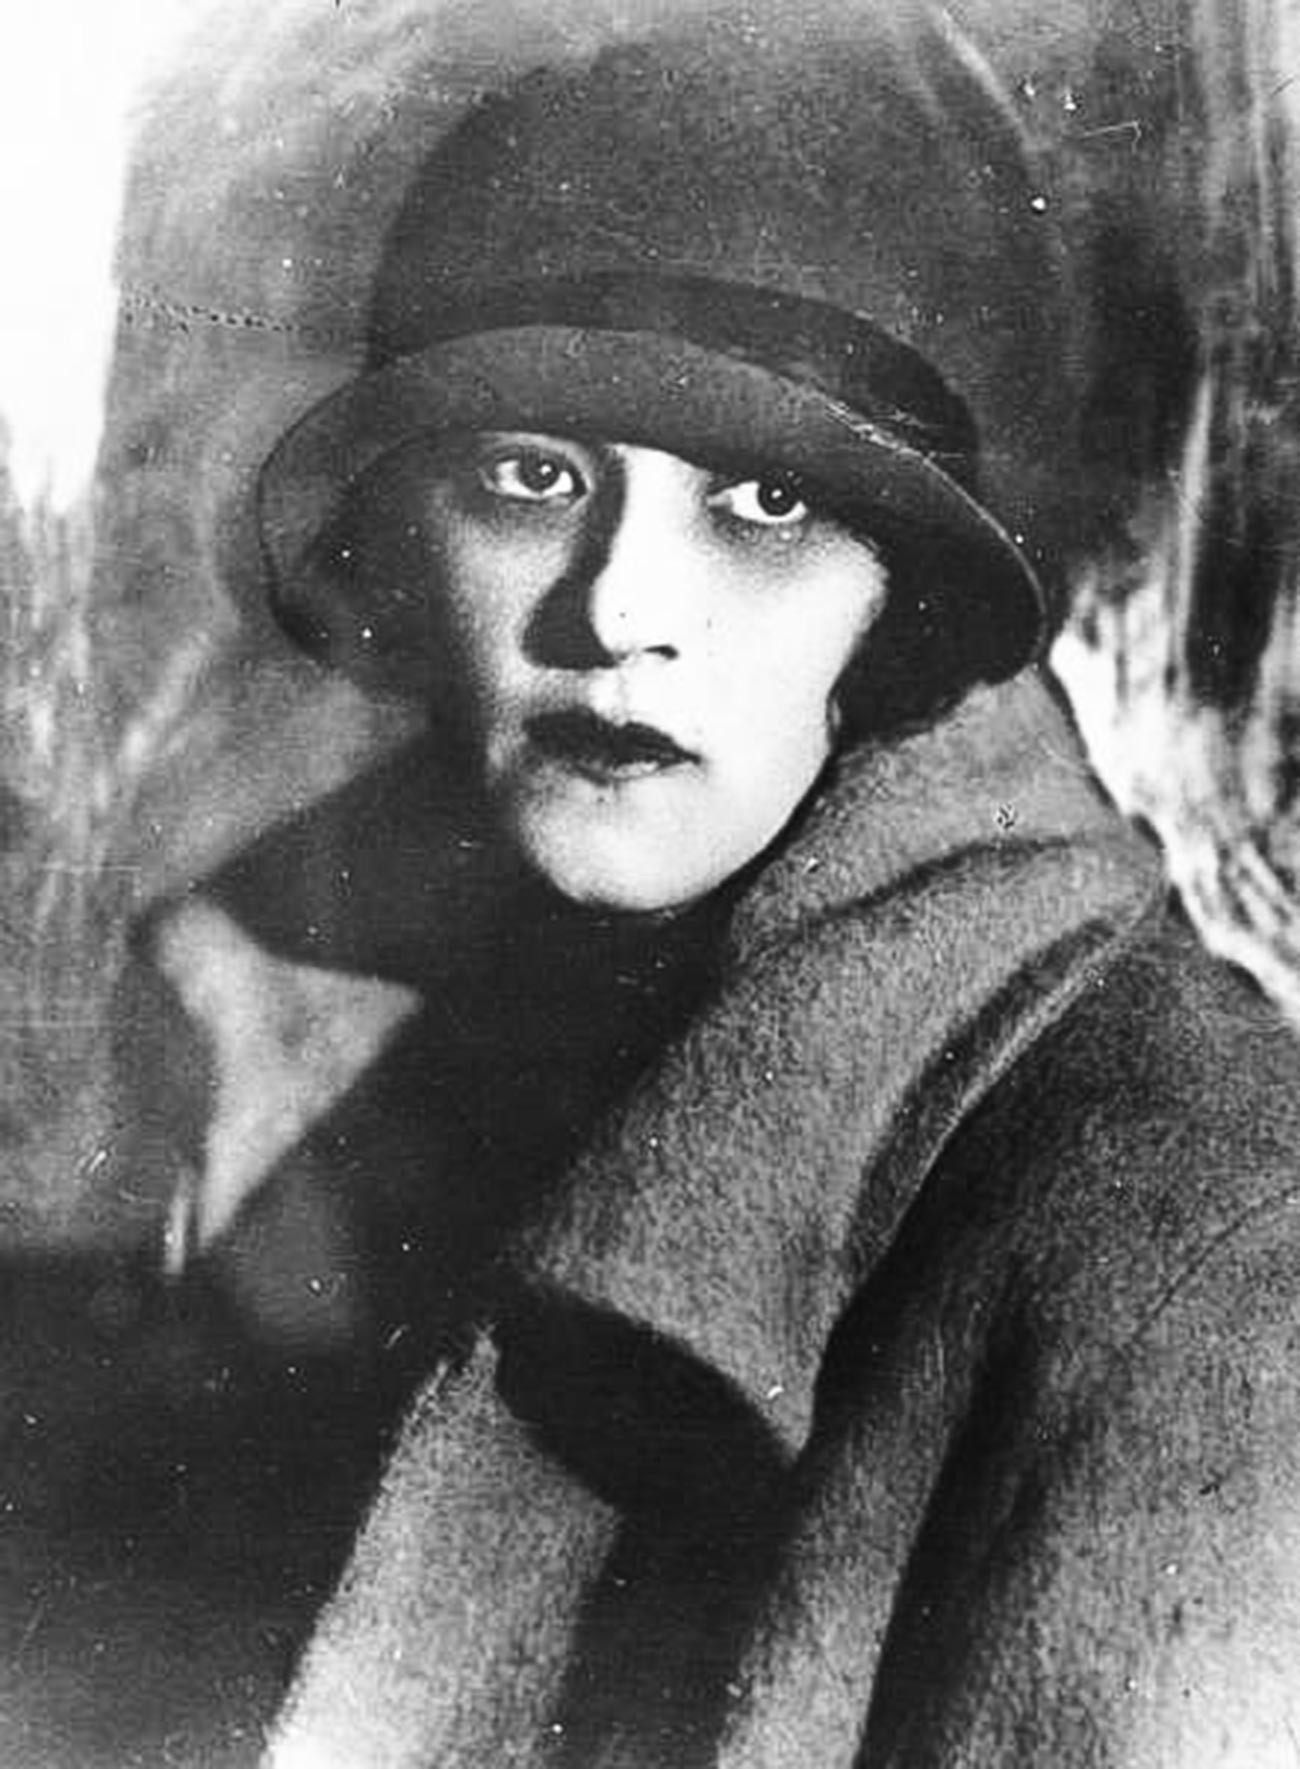 La actriz Faina Ranévskaia, 1928

